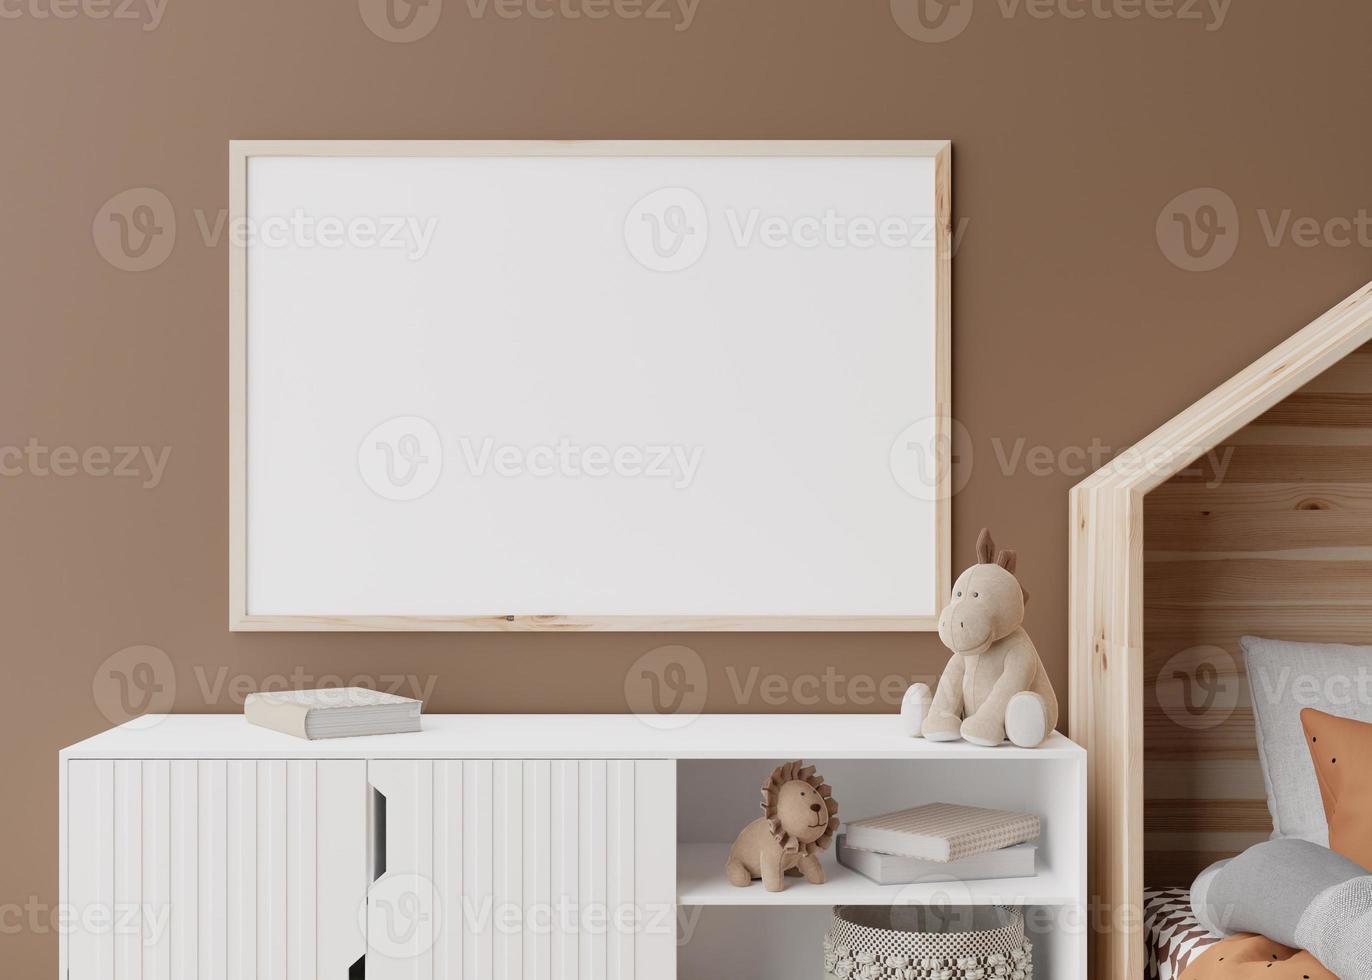 cadre photo horizontal vide sur un mur marron dans une chambre d'enfant moderne. maquette d'intérieur dans un style scandinave. gratuit, copiez l'espace pour votre photo, affiche. vue rapprochée. chambre cosy pour les enfants. rendu 3d.